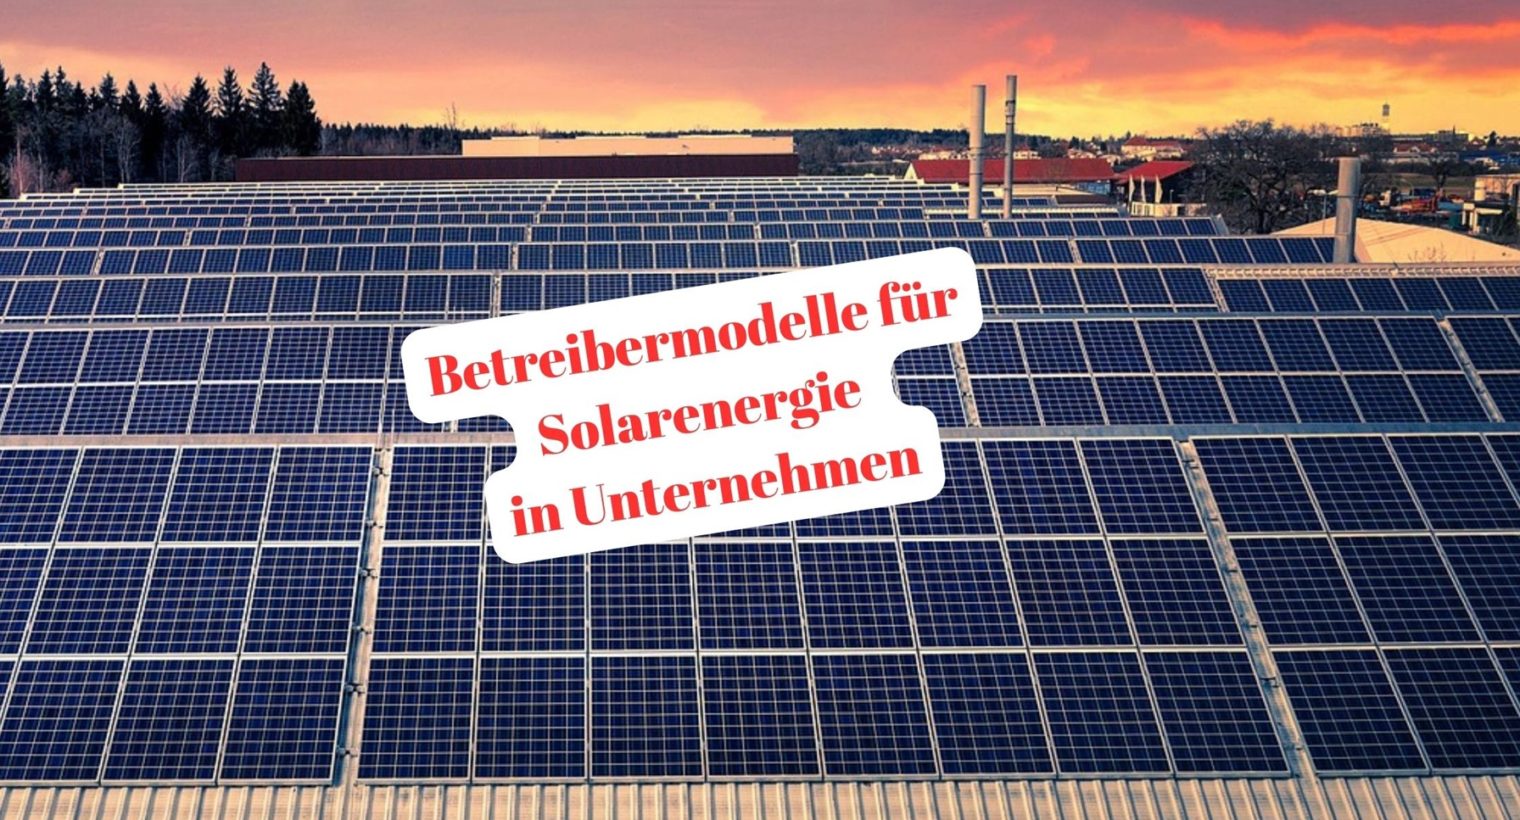 Betreibermodelle für Solarenergie in Unternehmen